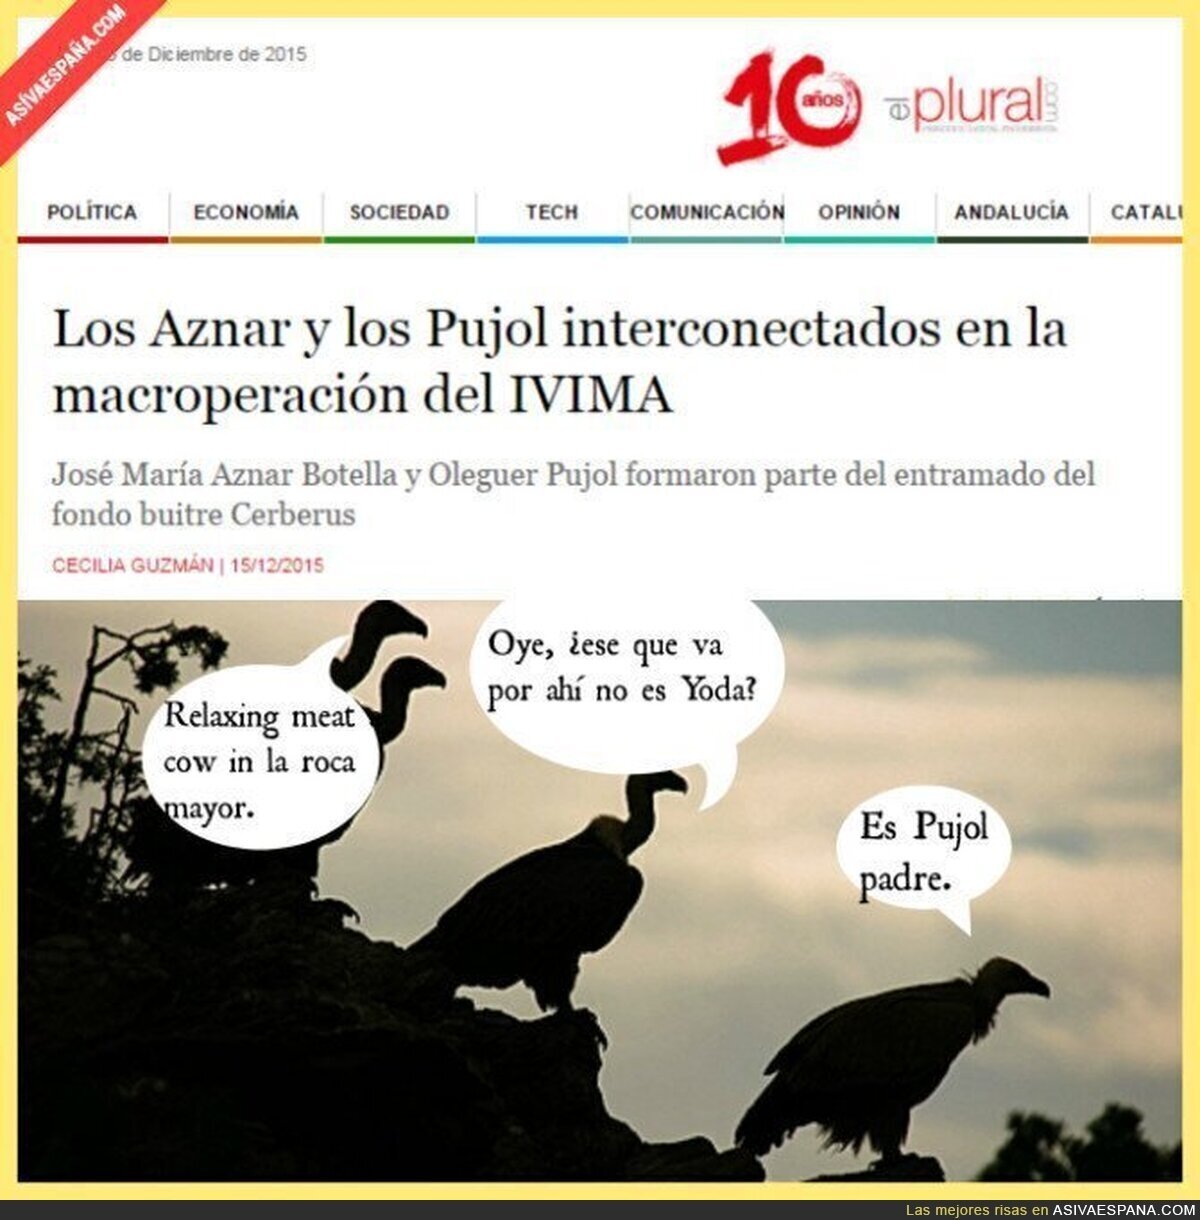 Los buitres de Aznar y Pujol